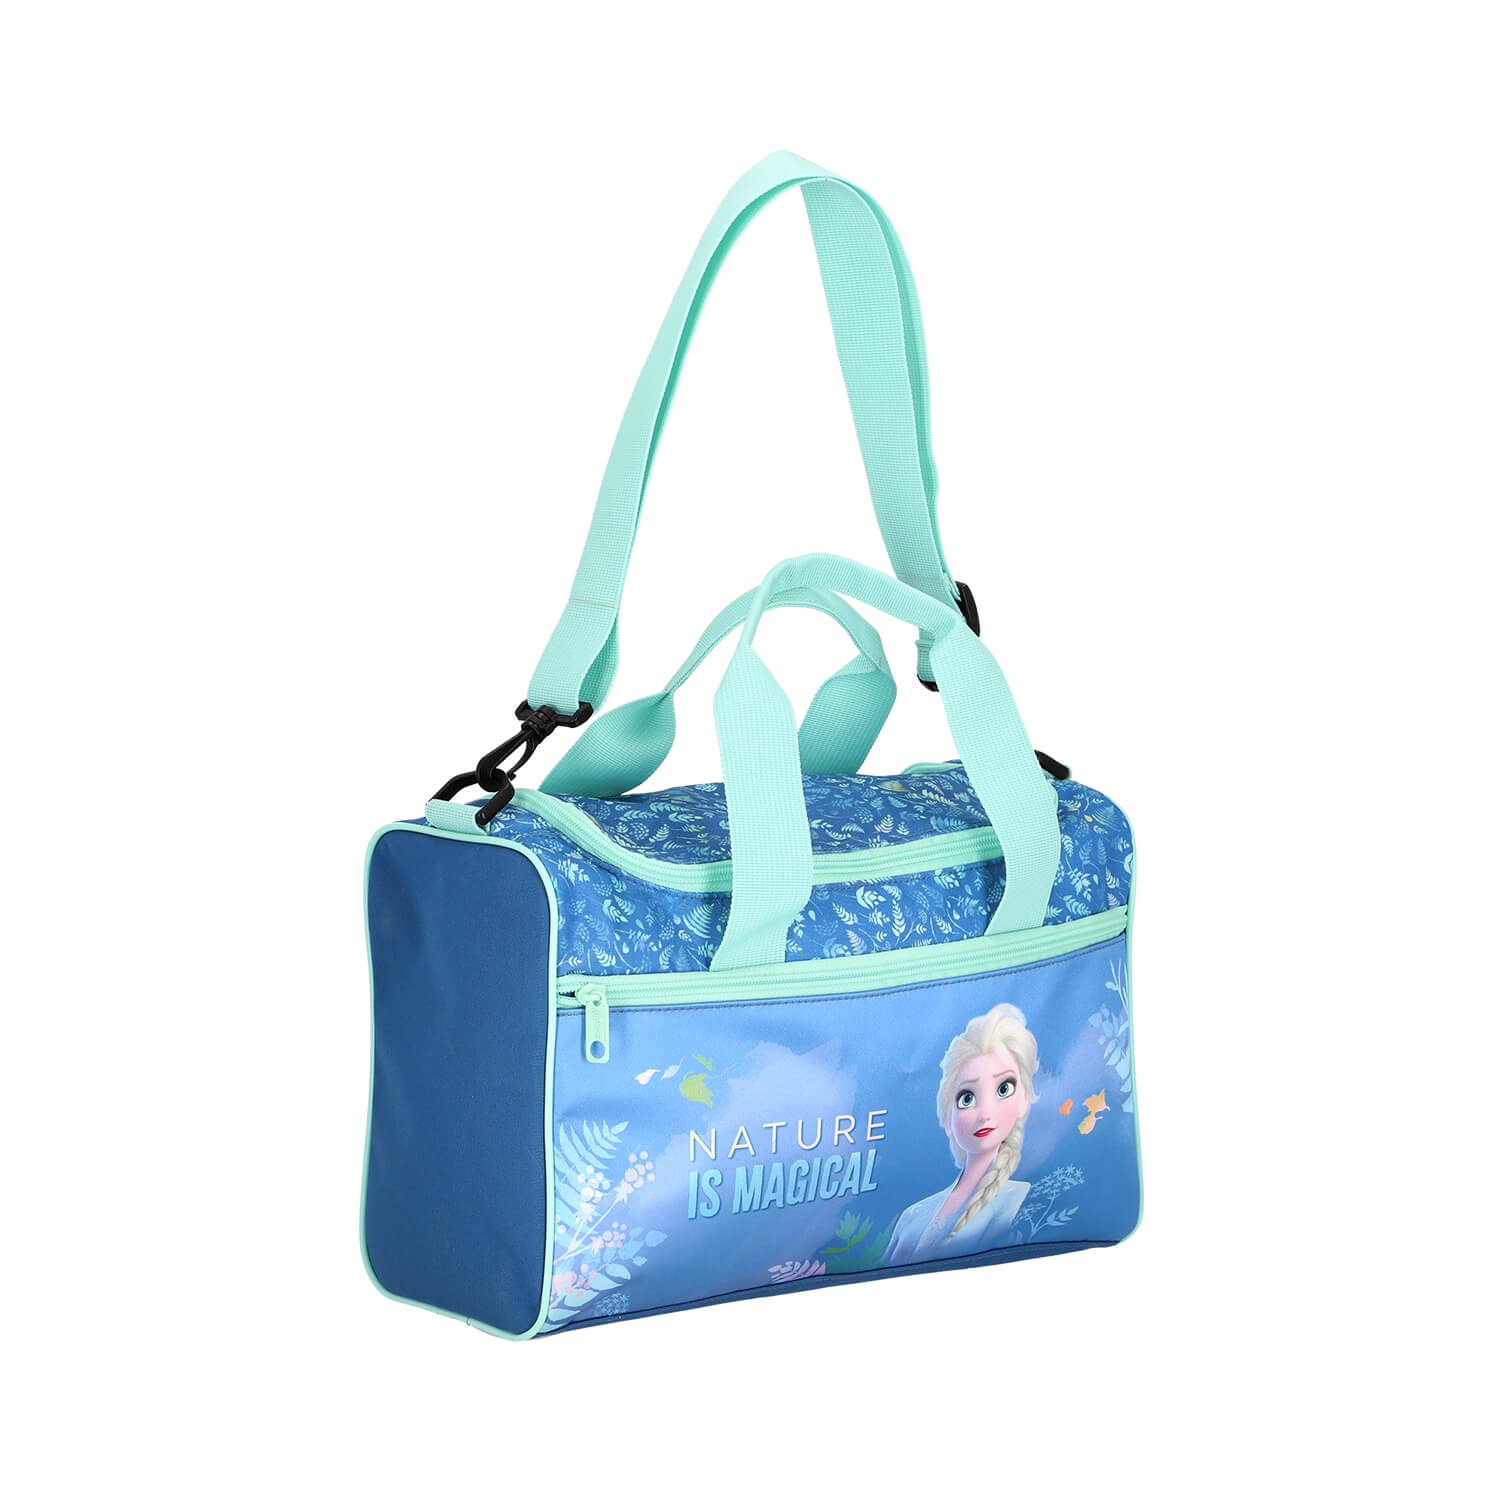 Scooli Sporttasche mit Frozen 2 Motiv in blau